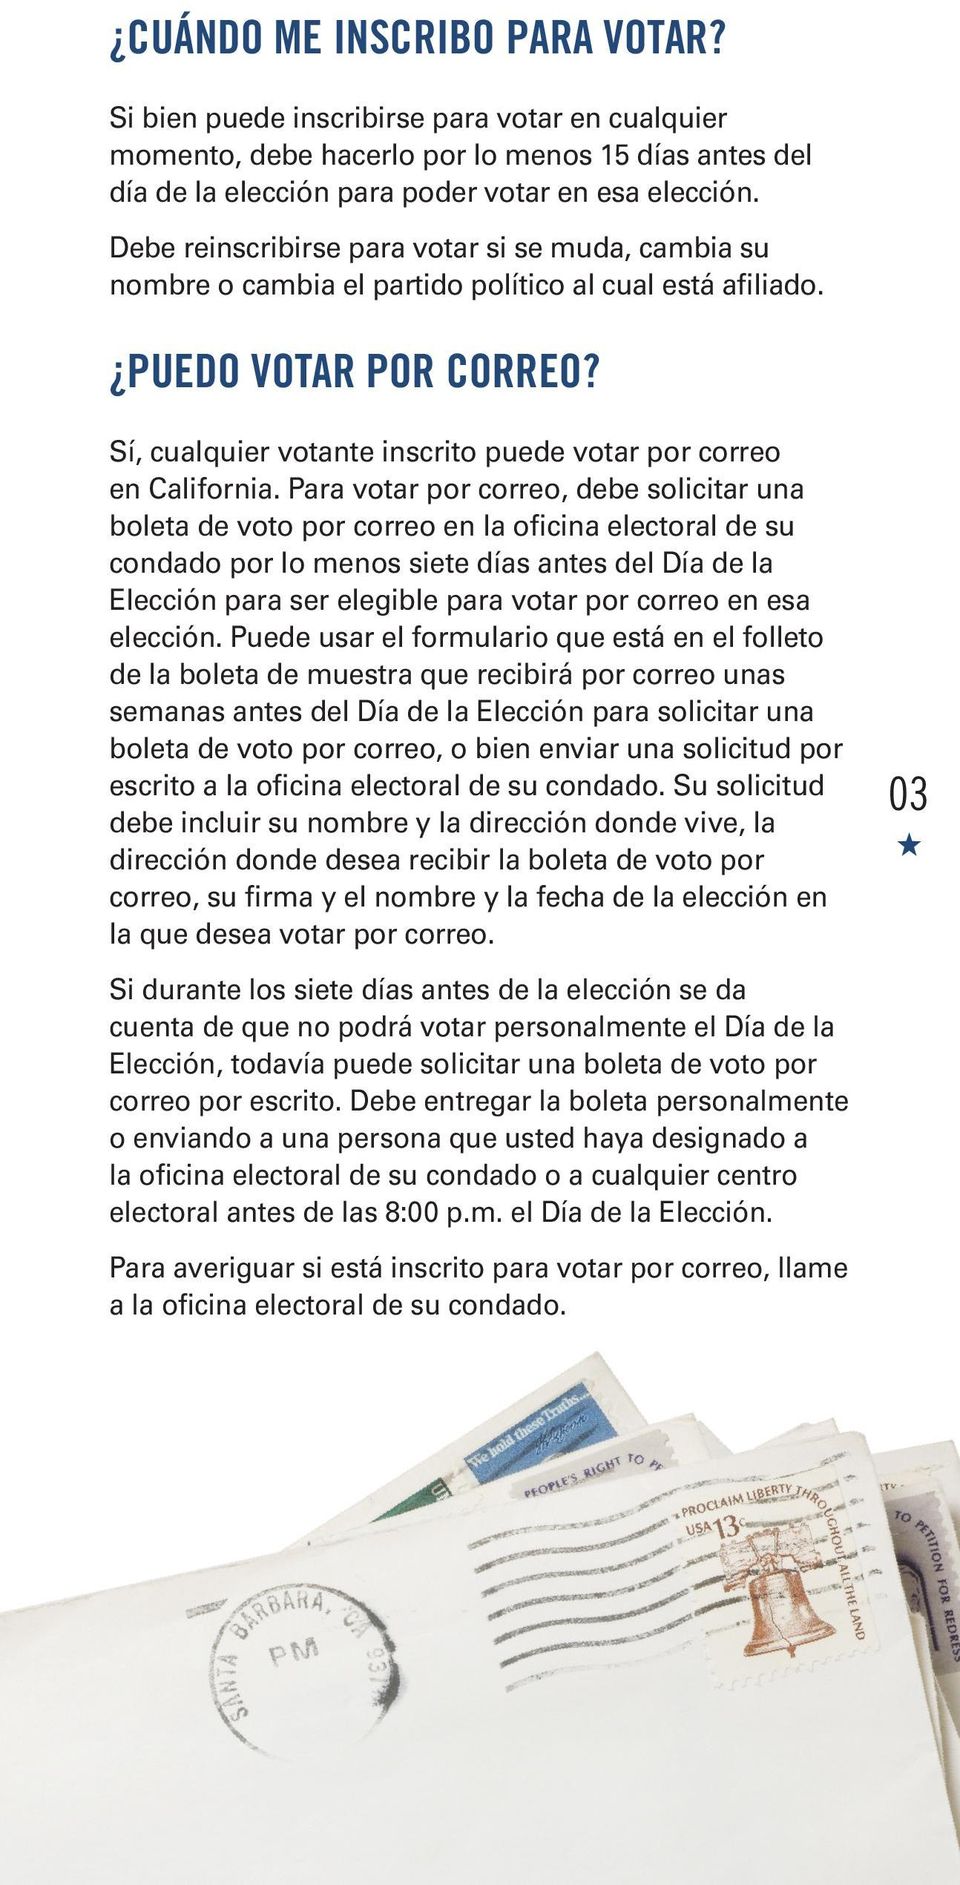 Sí, cualquier votante inscrito puede votar por correo en California.